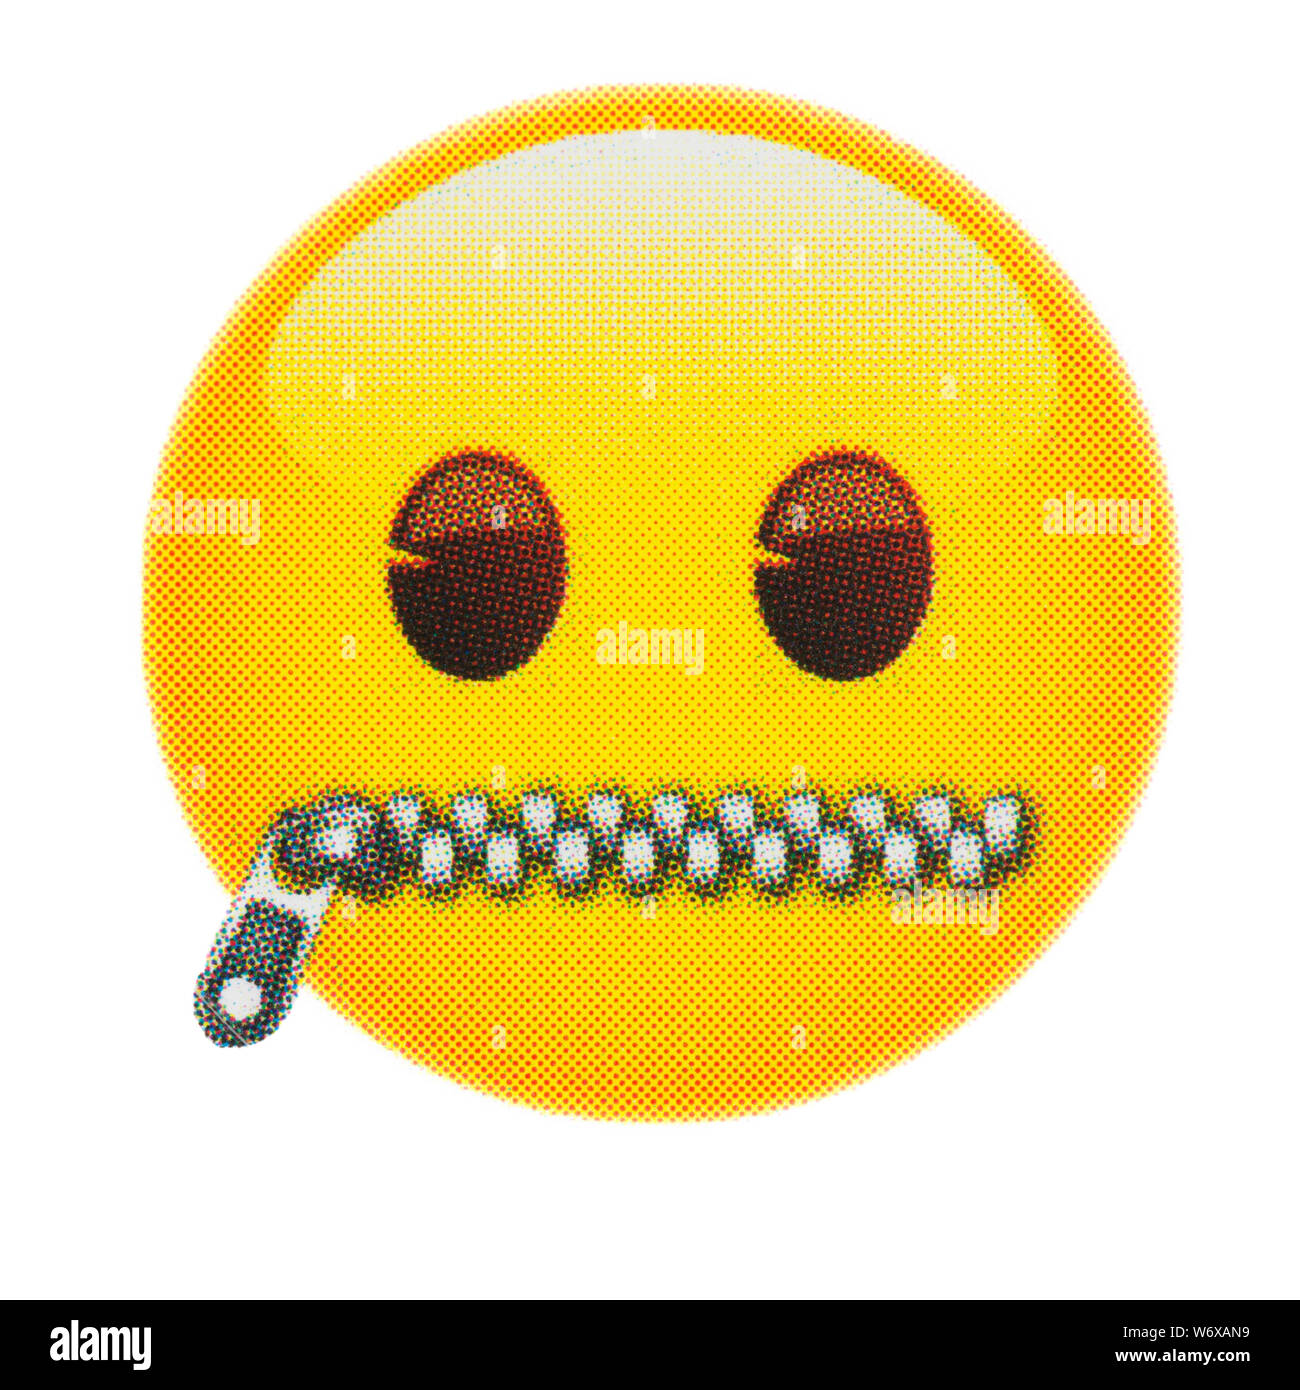 Zipper mouth face emoticon Stock Photo